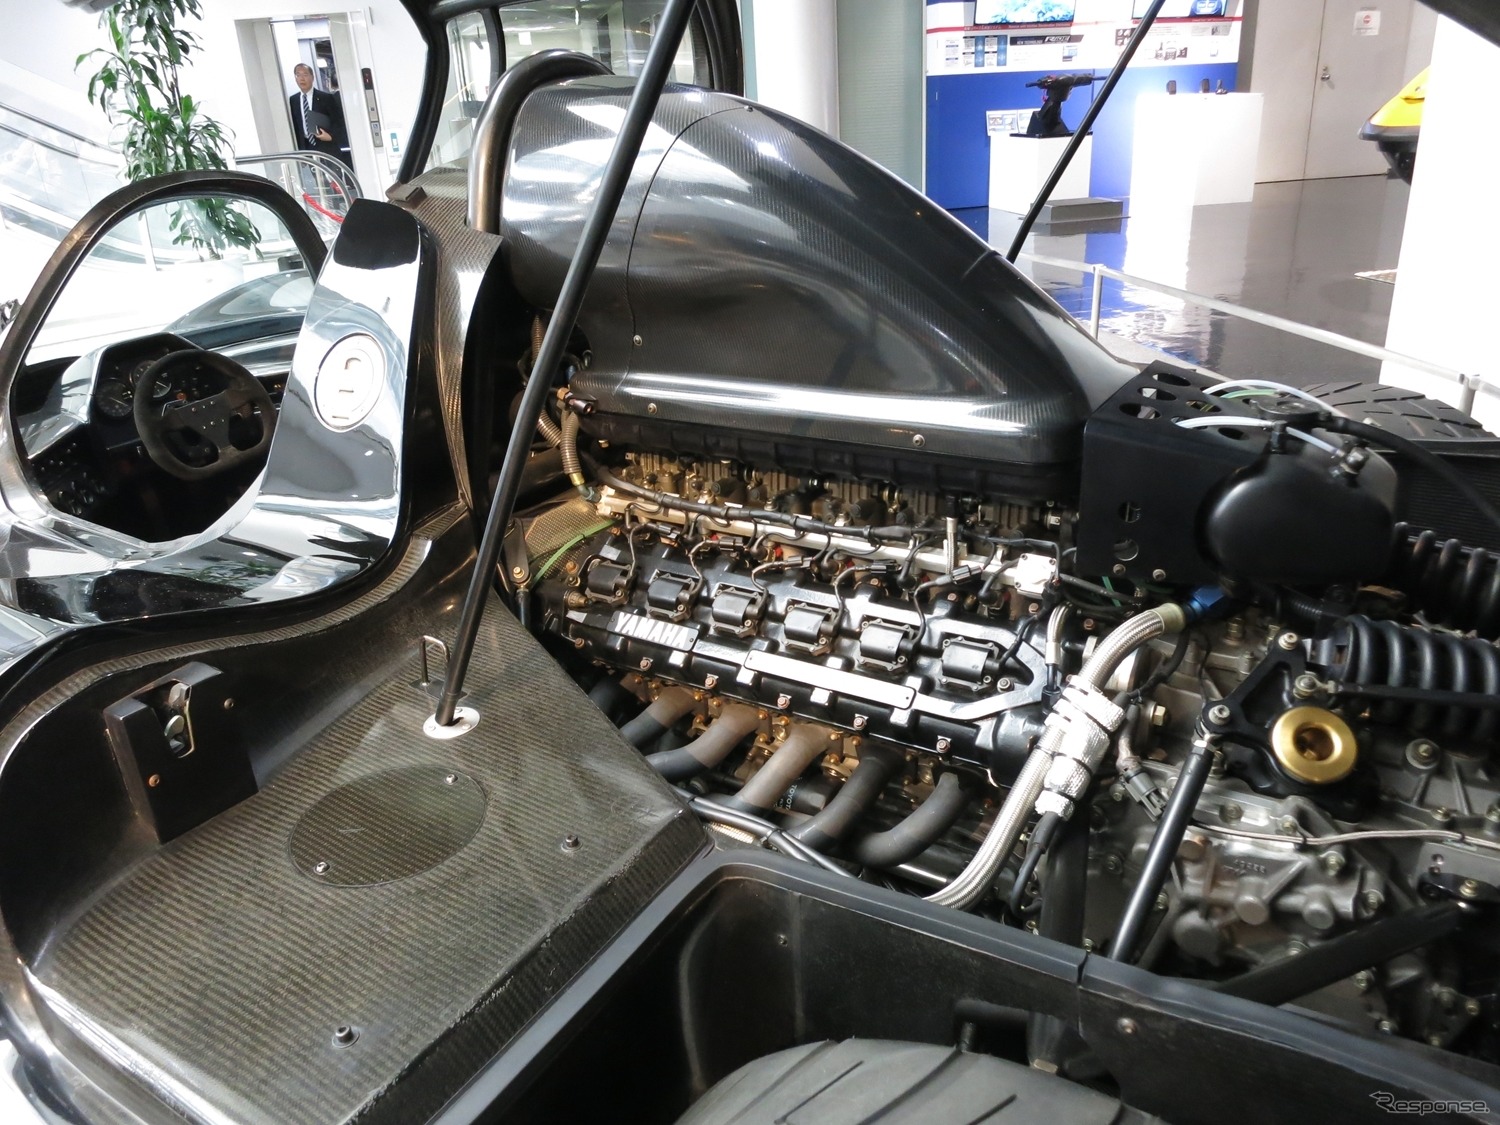 F1エンジン搭載のスーパーカー「OX99-11」